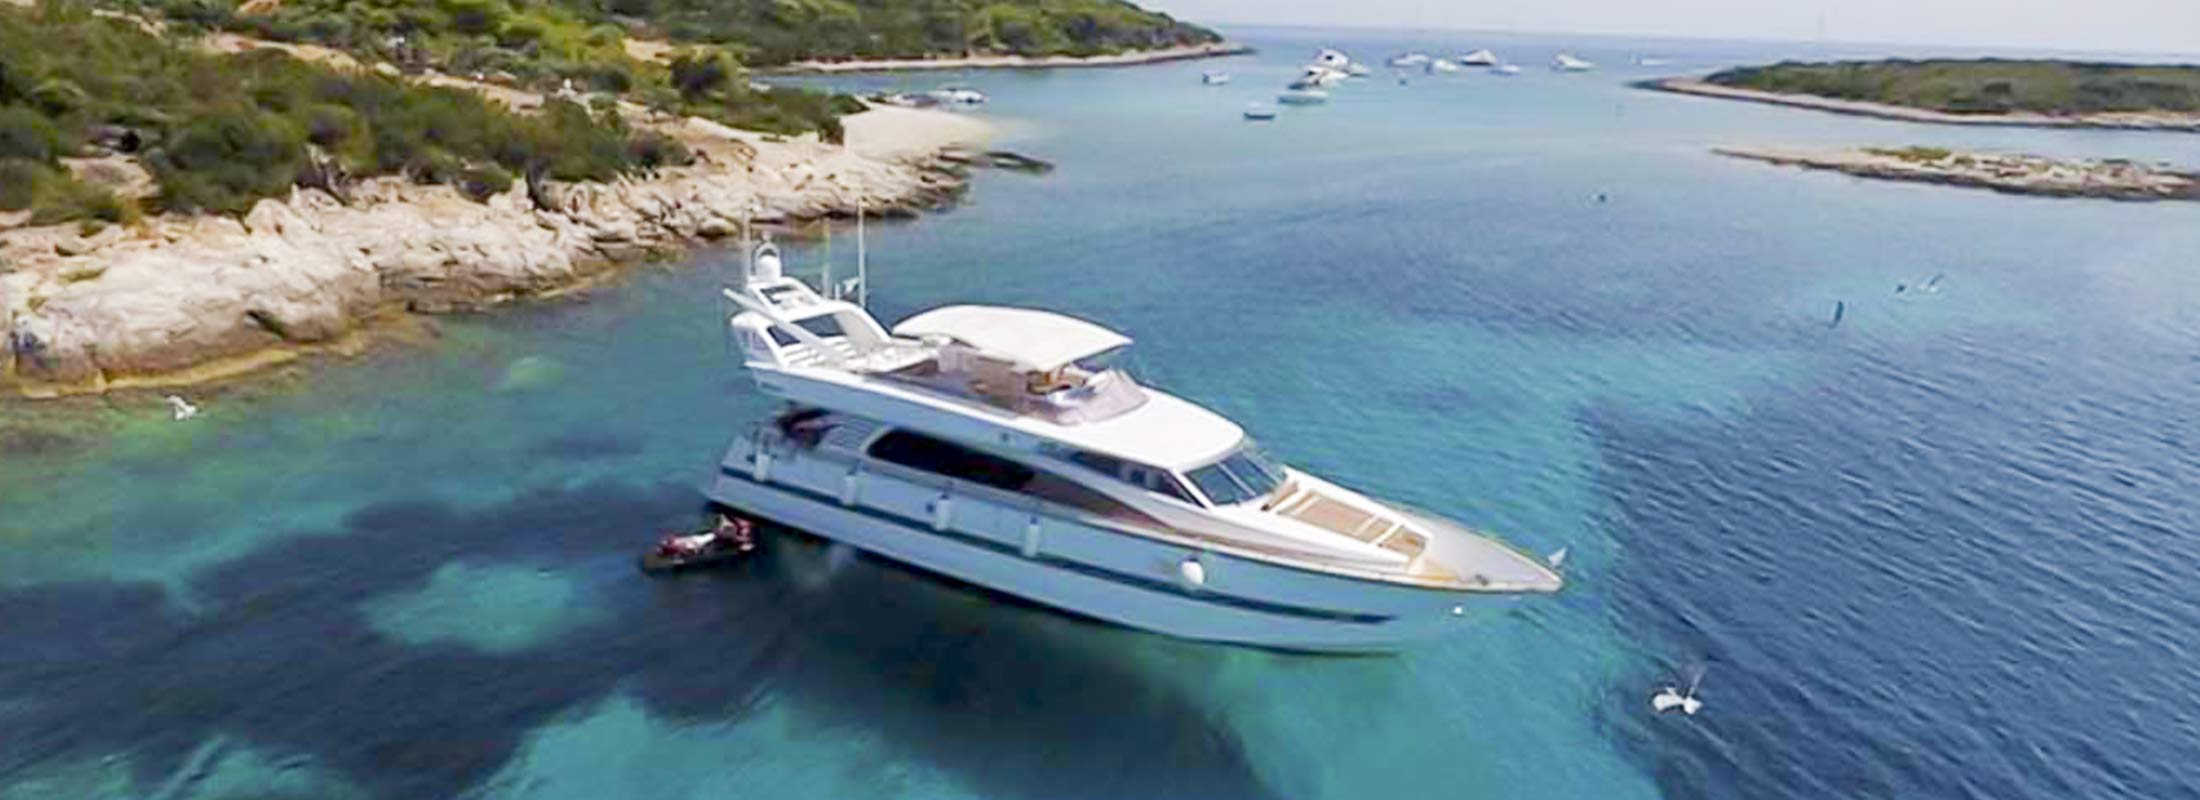 Csimbi Motor Yacht for Charter Mediterranean slider 2